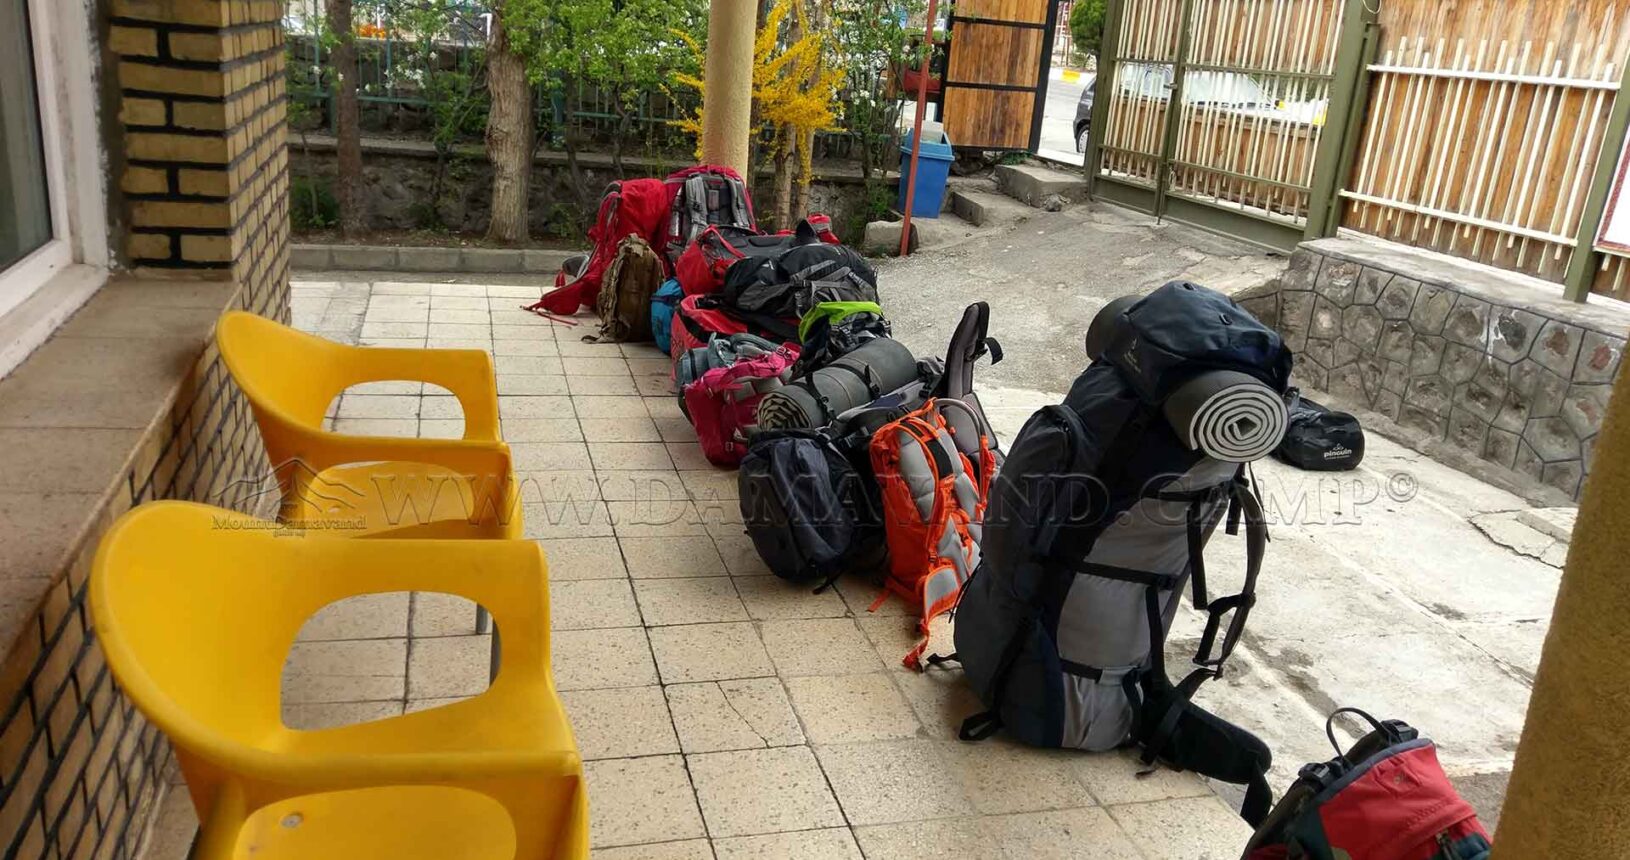 Our clients backpacks are ready to be transferred from Camp 1.